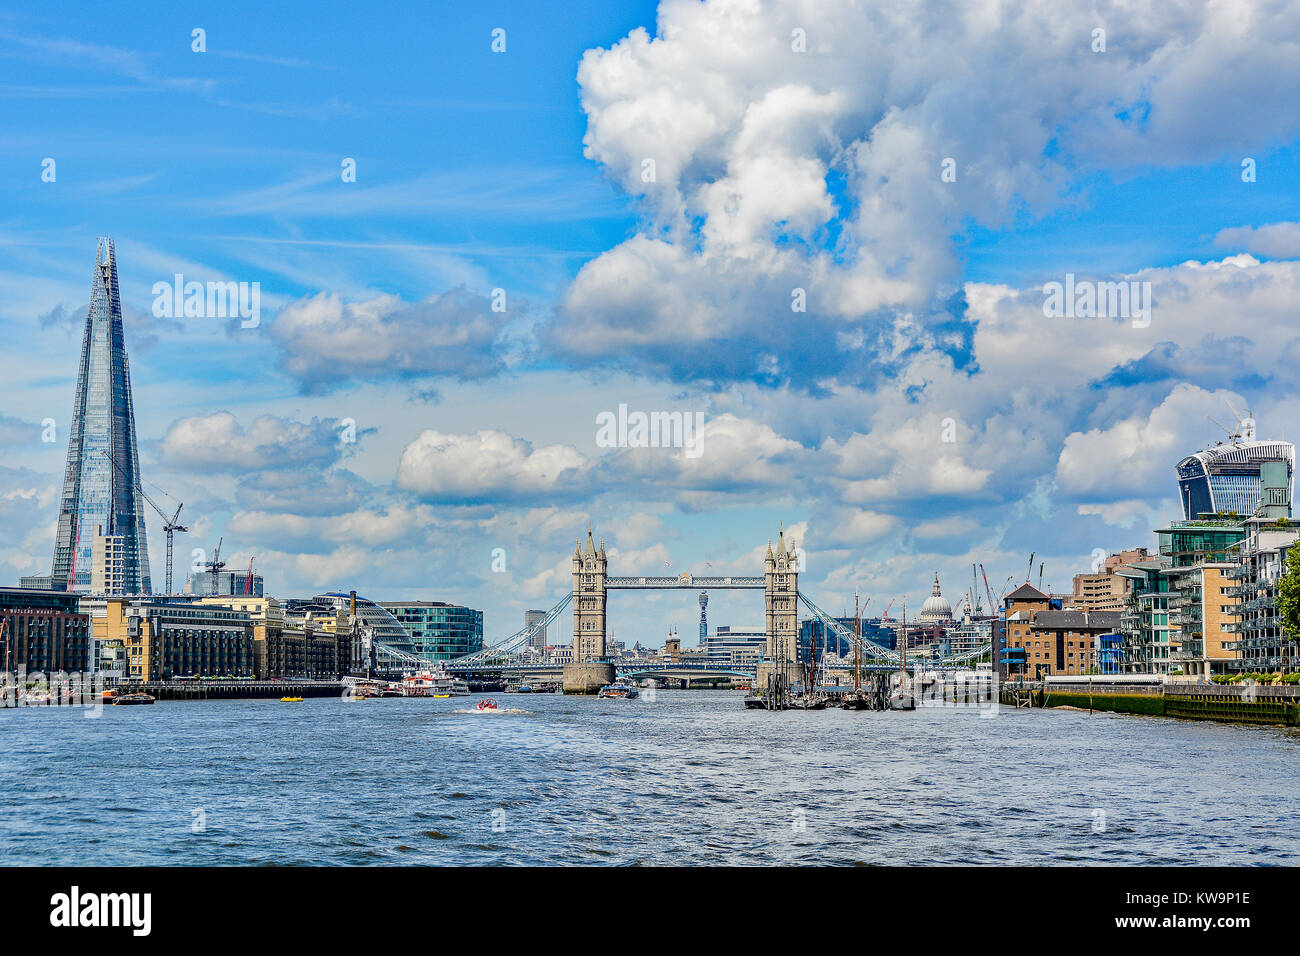 Le Pont de Londres dans la rivière Thames, Londres, Angleterre. Banque D'Images